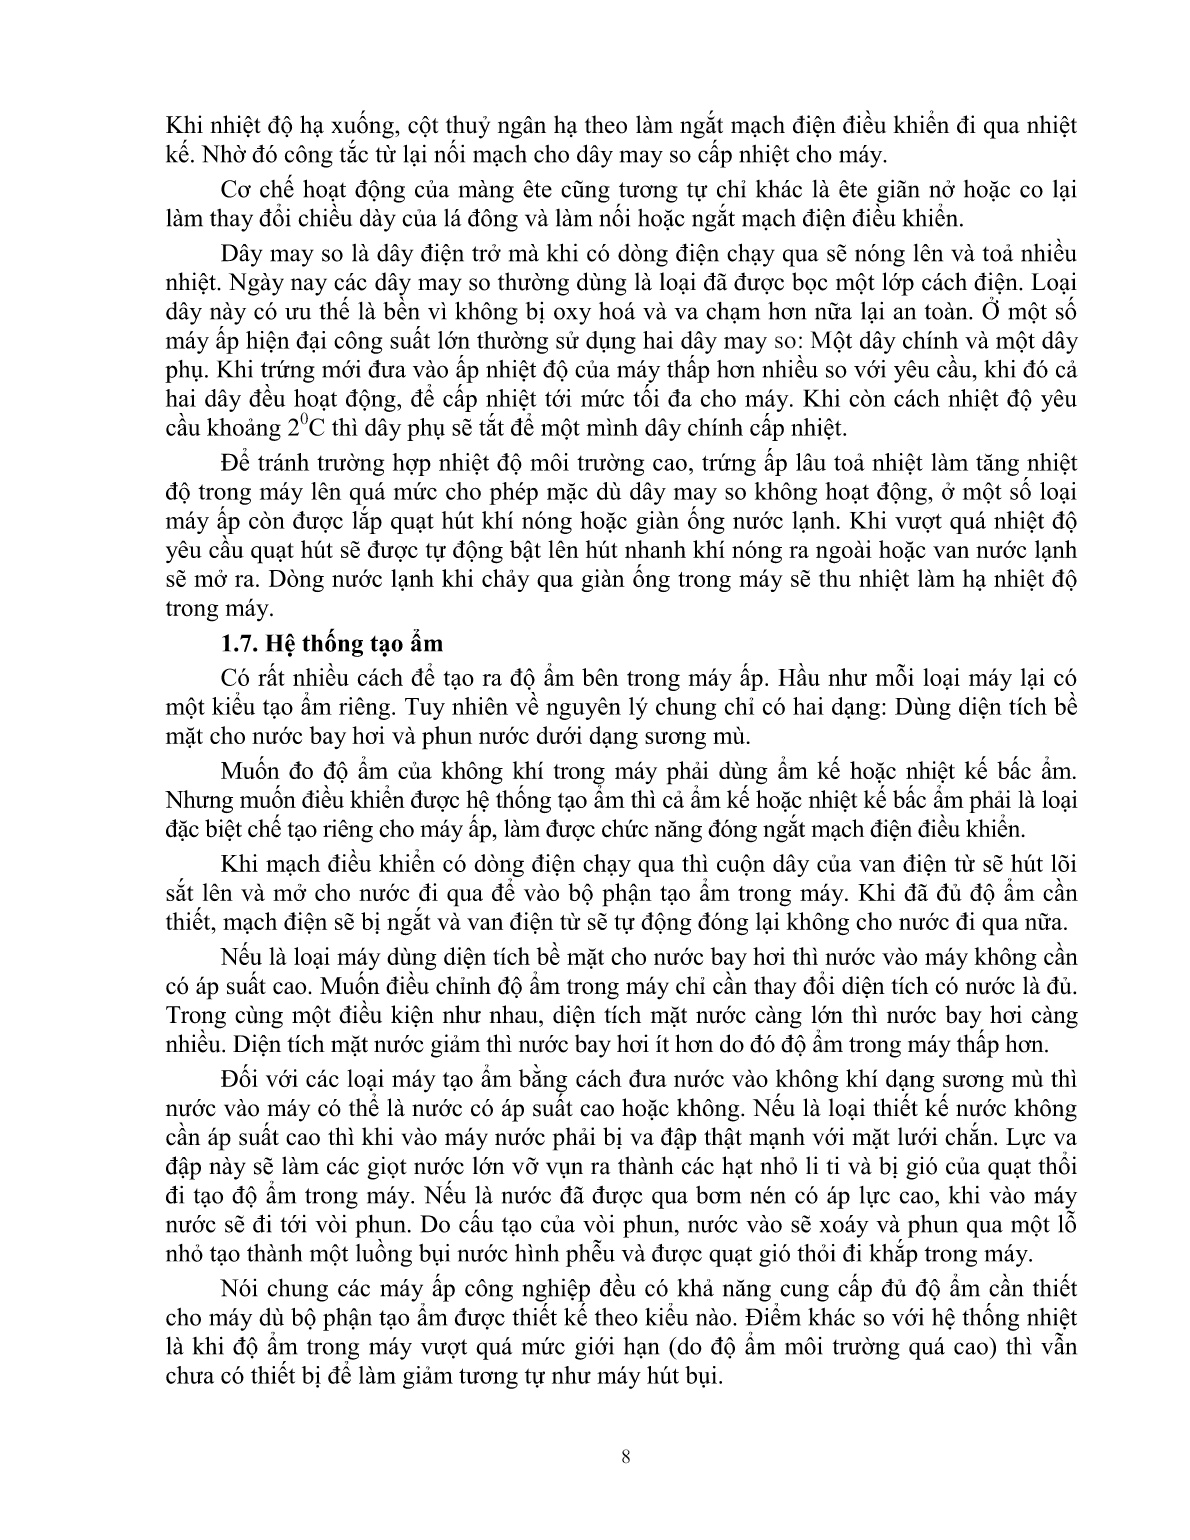 Giáo trình mô đun Ấp trứng gà (Trình độ: Đào tạo dưới 3 tháng) trang 9